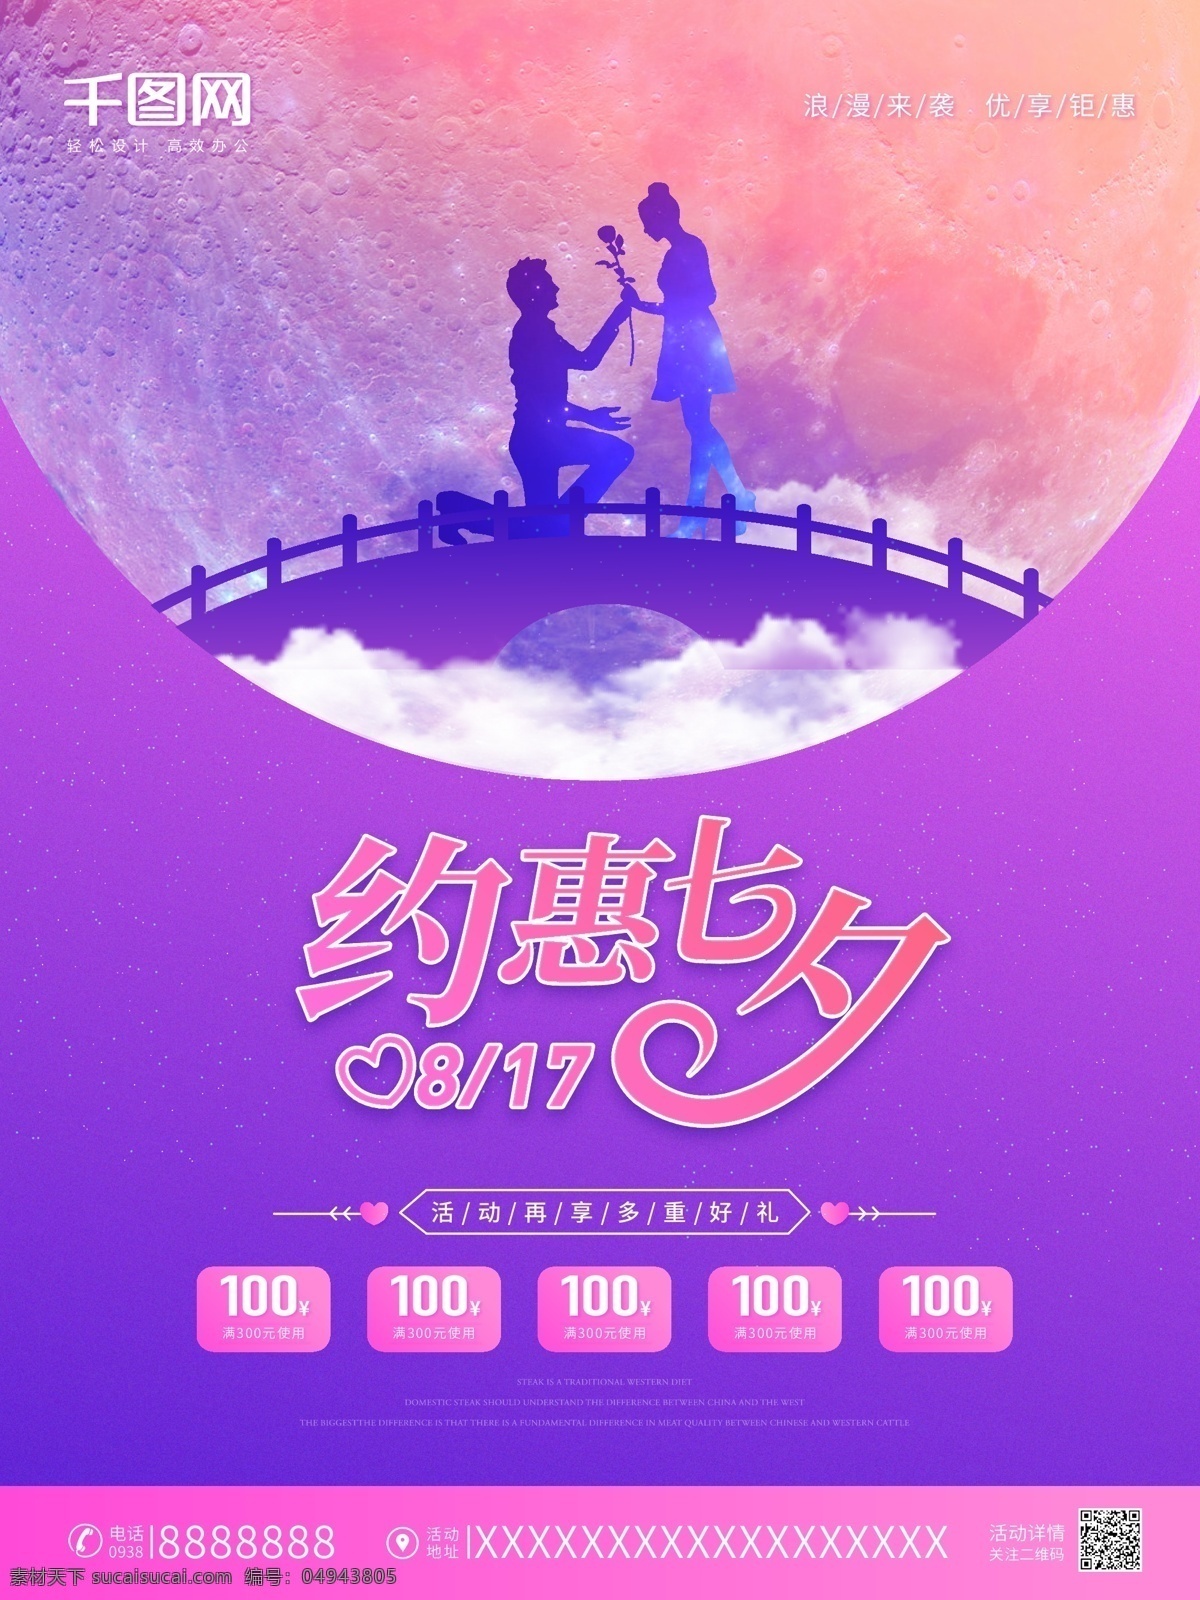 紫色 浪漫 七夕 促销 海报 字体设计 情人节 唯美 时尚 七夕海报 传统节日 渐变 简约